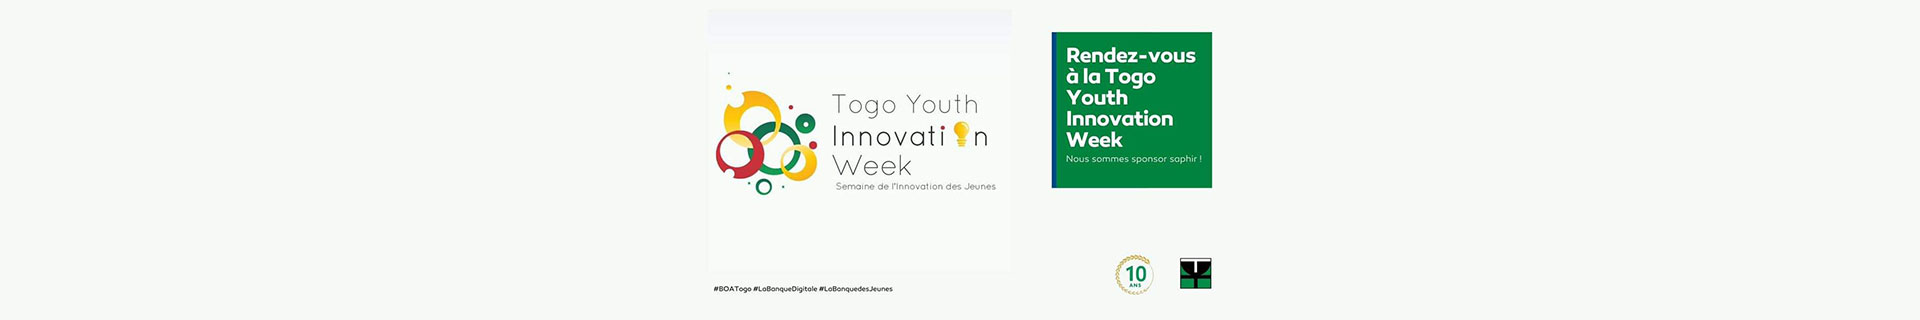 BOA-TOGO Sponsorise le Togo Youth Innovation Week